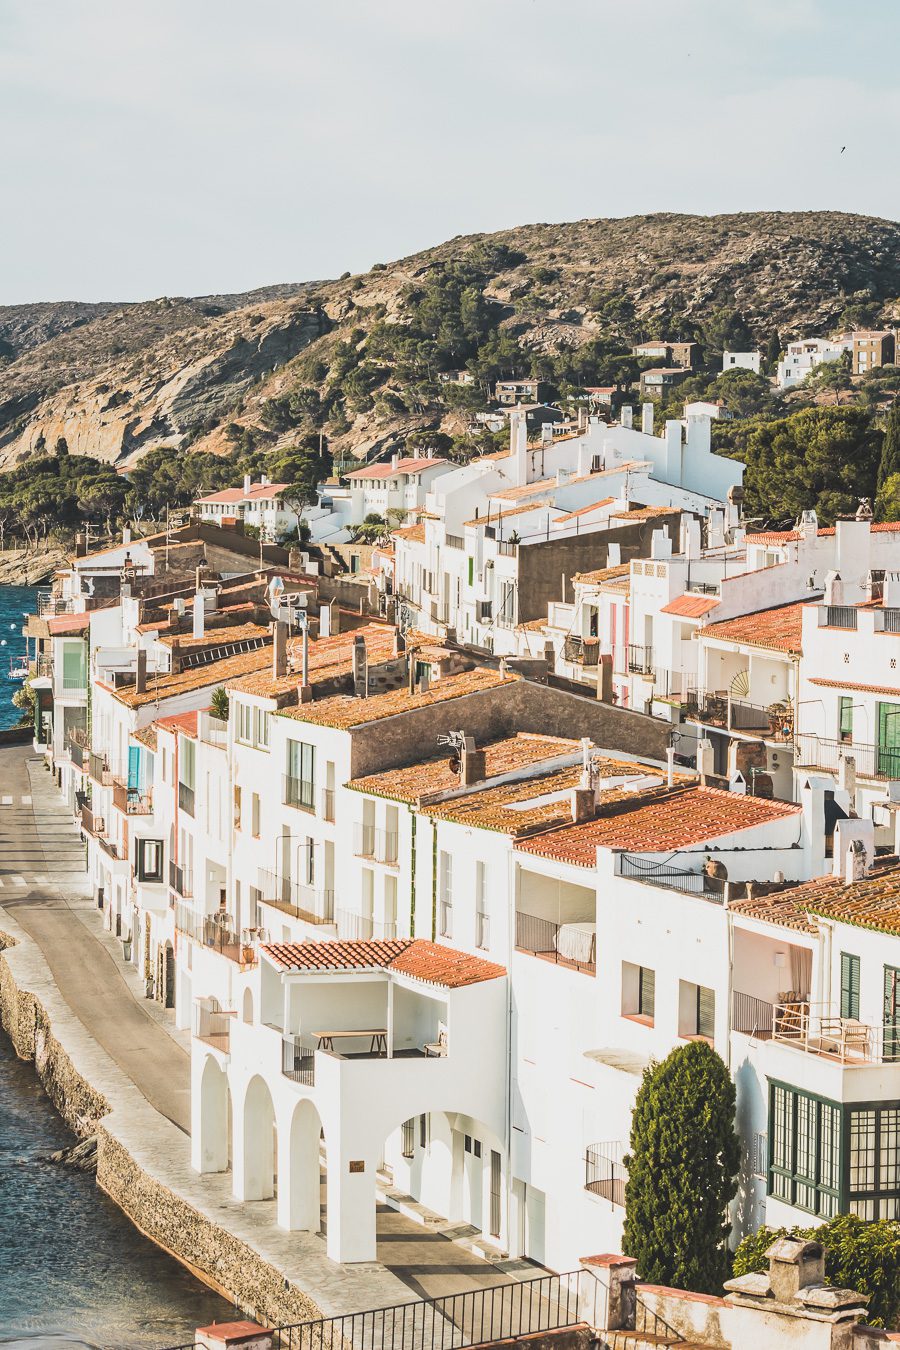 Découvrez Cadaqués, un joyau de la Catalogne en Espagne. Mais alors, que faire à Cadaqués ? Partez en road trip à travers ce paysage enchanteur et laissez-vous séduire par ses plages de rêve. Que vous soyez en couple, en famille ou entre amis, cette destination est parfaite pour des vacances inoubliables. Avec son ambiance bohème et ses maisons blanches, chaque coin de rue vous émerveillera. Ne manquez pas cette opportunité de vivre un road trip à travers la Costa Brava.